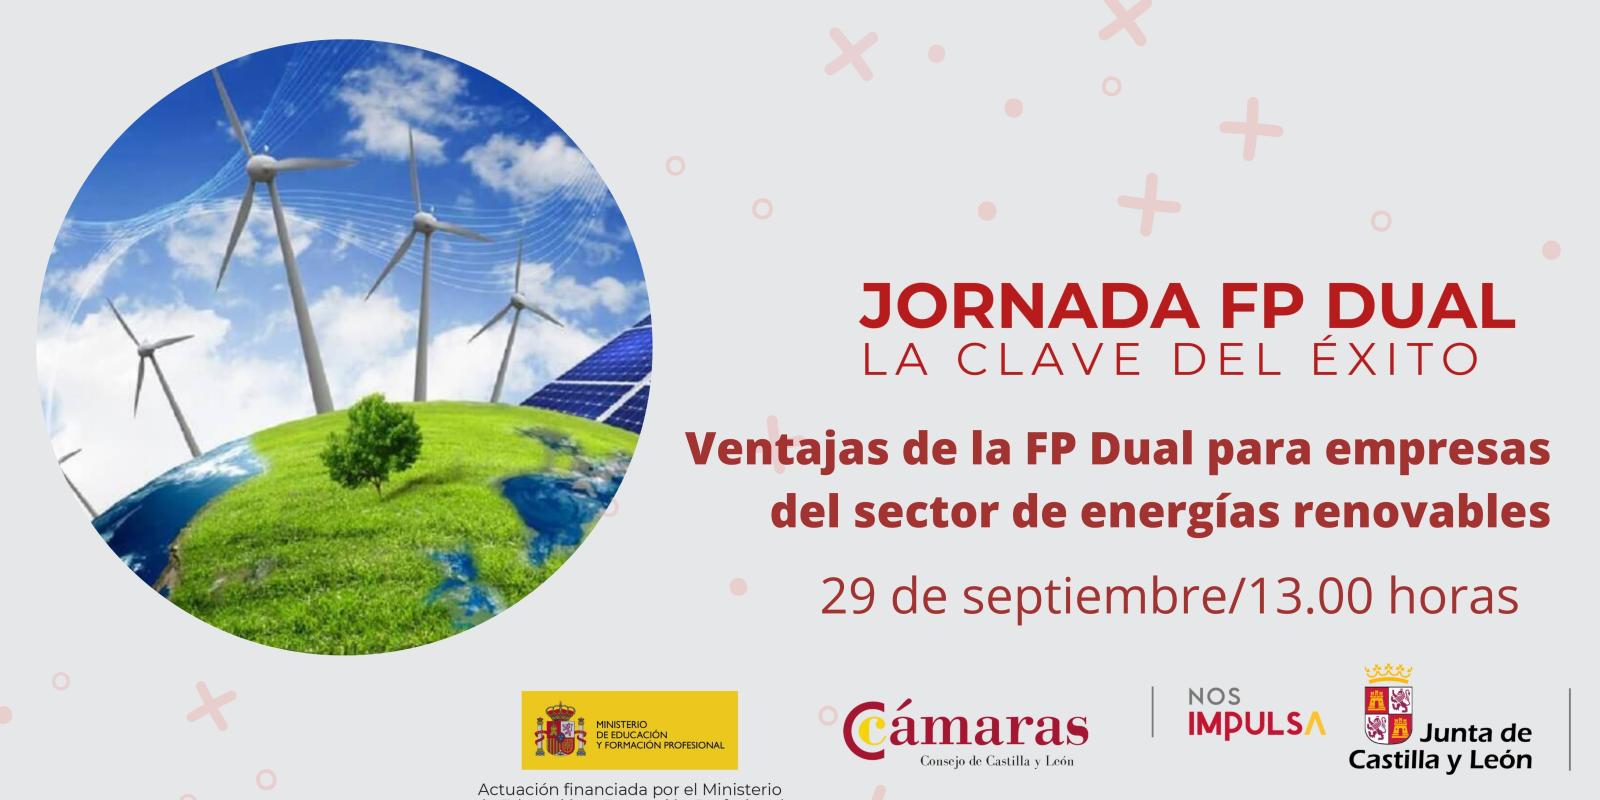 La Cámara de Comercio de Soria organiza el próximo 29 de septiembre una jornada sobre la empleabilidad que genera la FP Dual centrada en el sector de las energías renovables